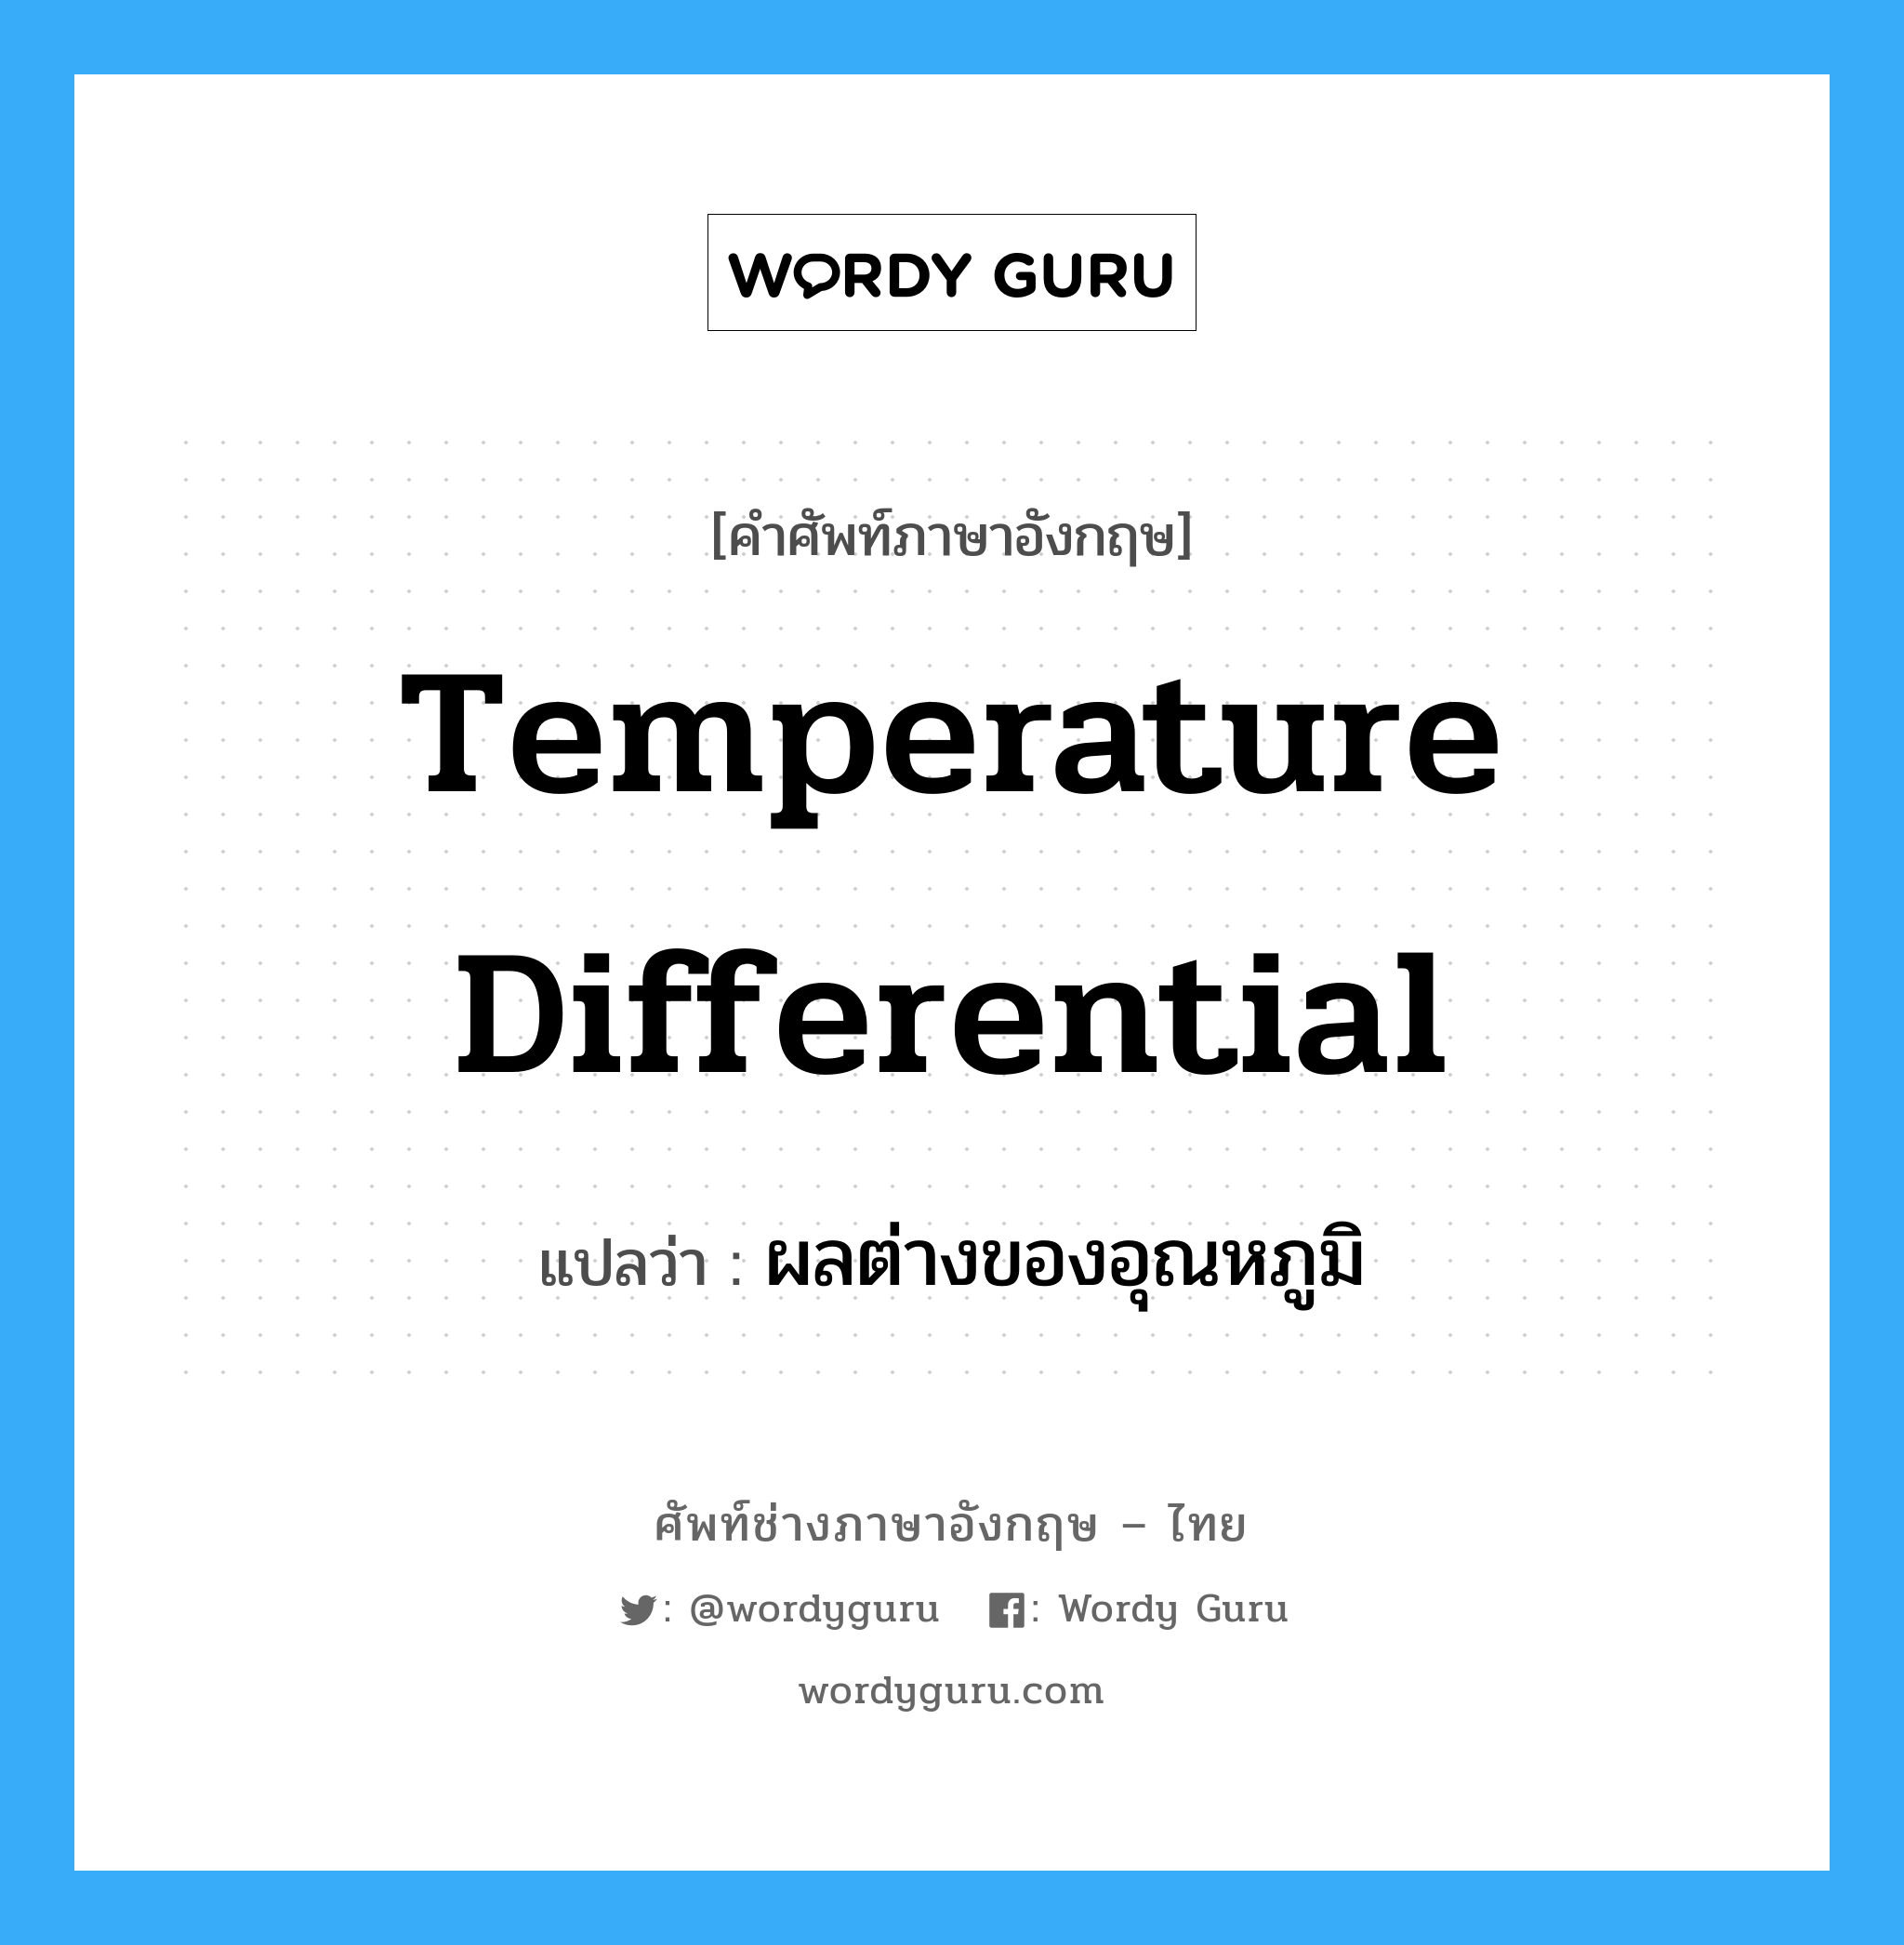 temperature differential แปลว่า?, คำศัพท์ช่างภาษาอังกฤษ - ไทย temperature differential คำศัพท์ภาษาอังกฤษ temperature differential แปลว่า ผลต่างของอุณหภูมิ